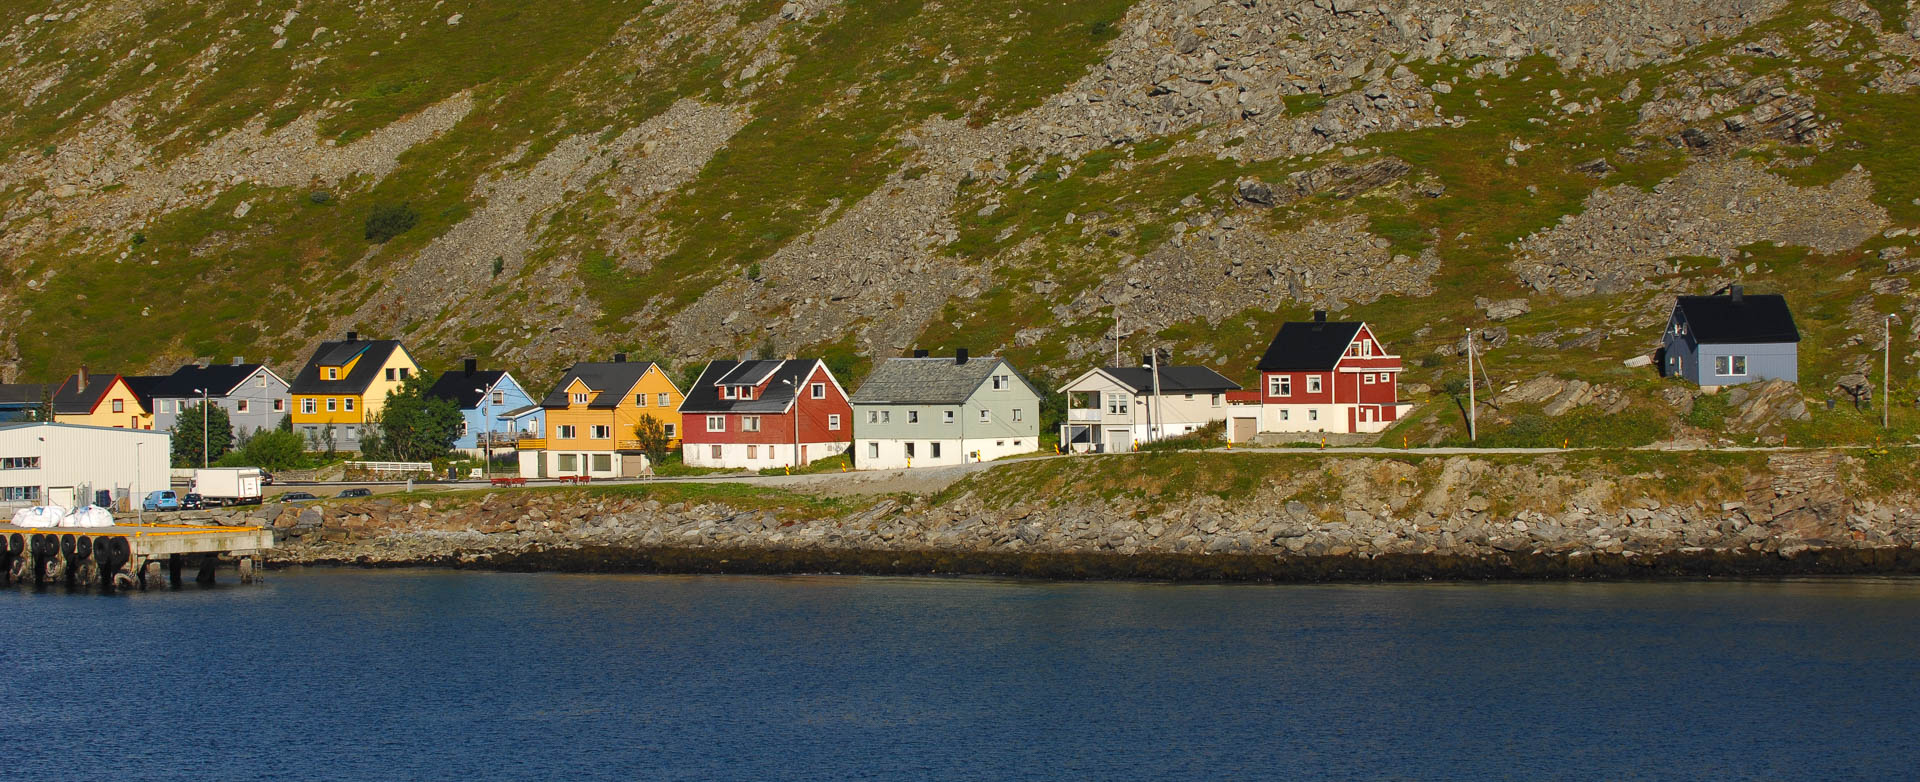 Havøysund